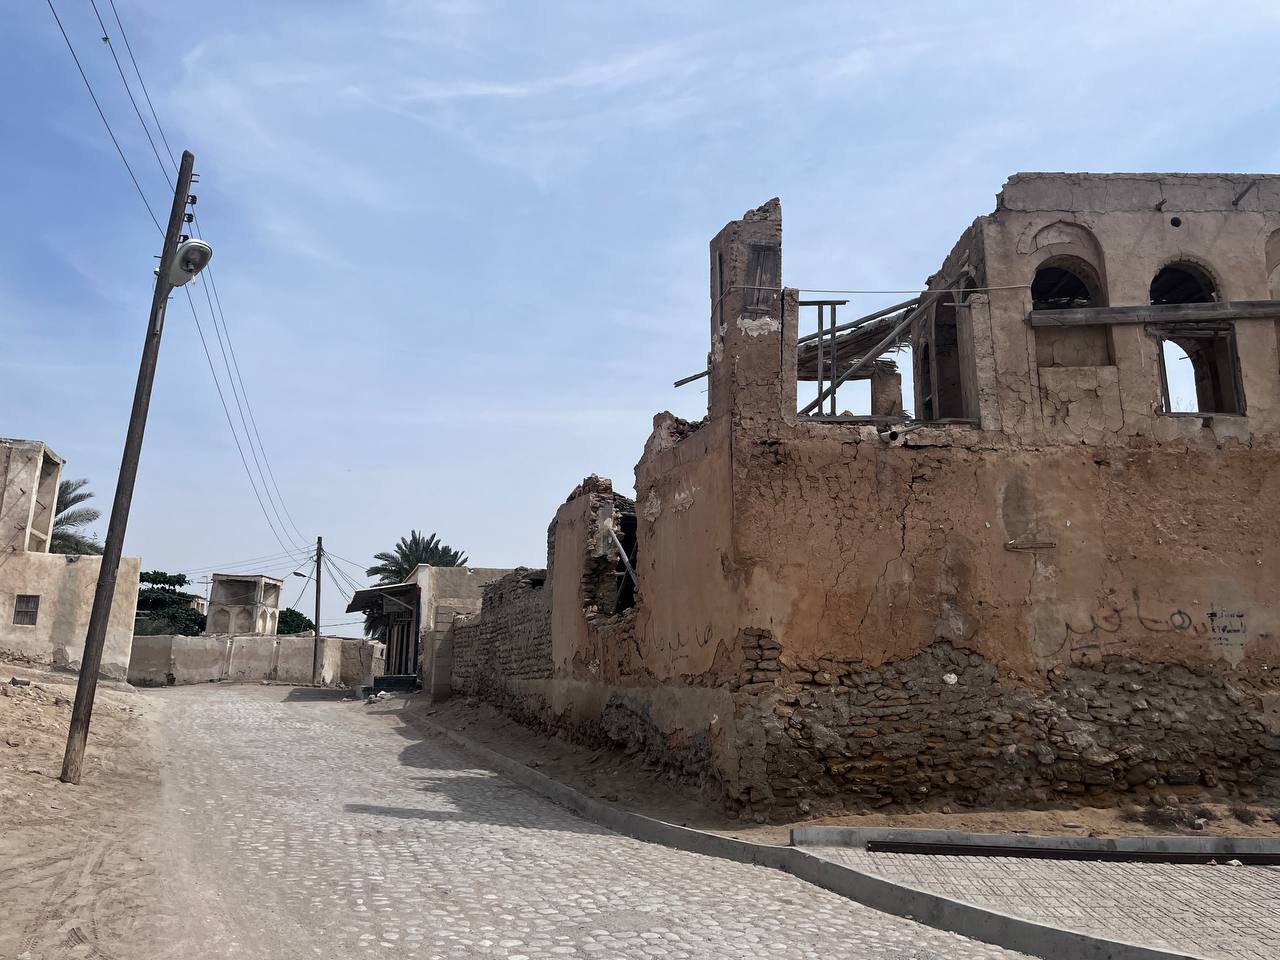 قلعه نادری قشم در معرض نابودی/ میراث فرهنگی و بی توجهی مسیولین!